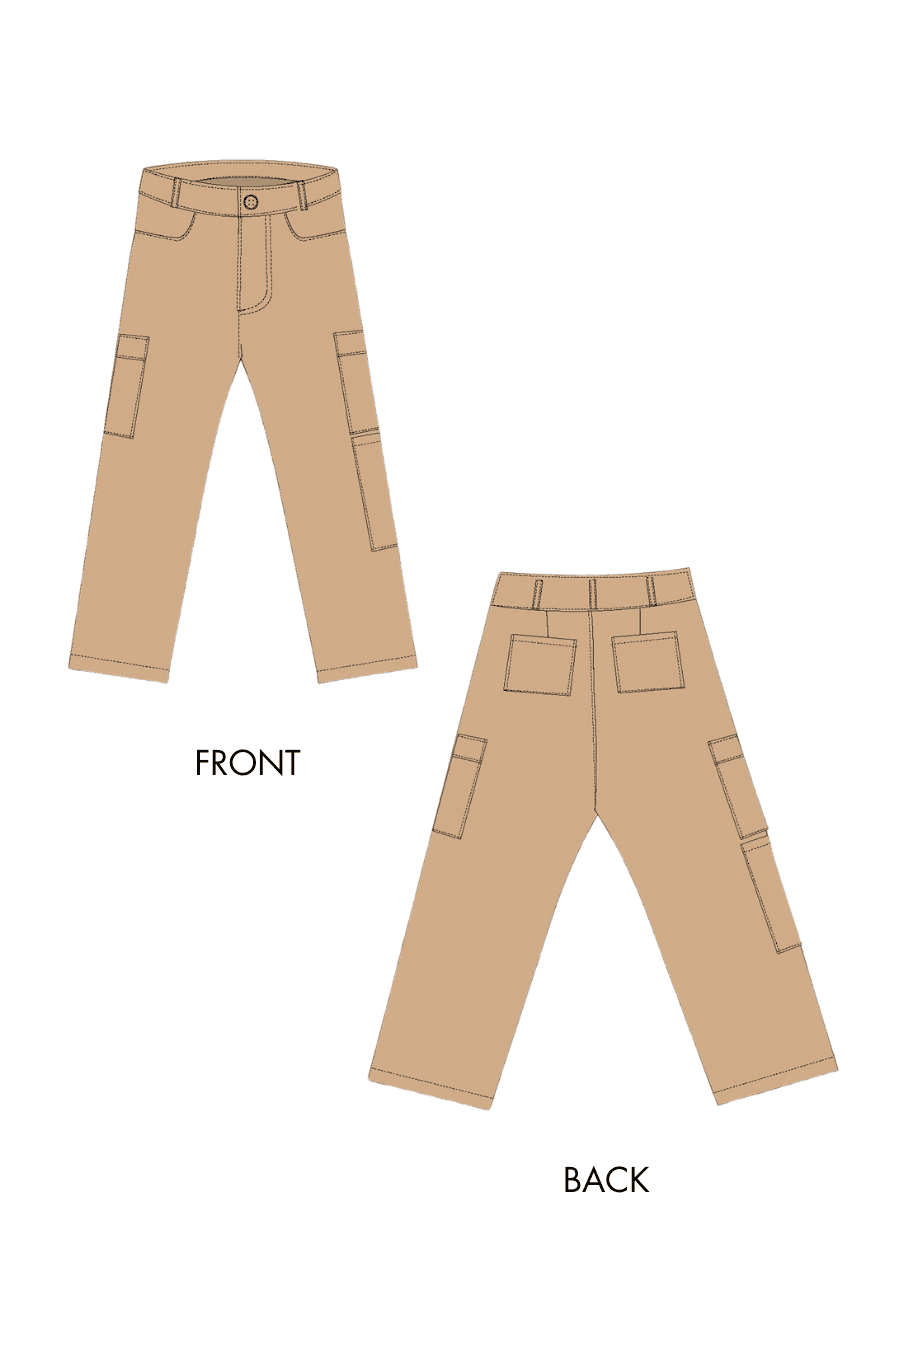 Cargo Pants Sewing Pattern 'Raina'